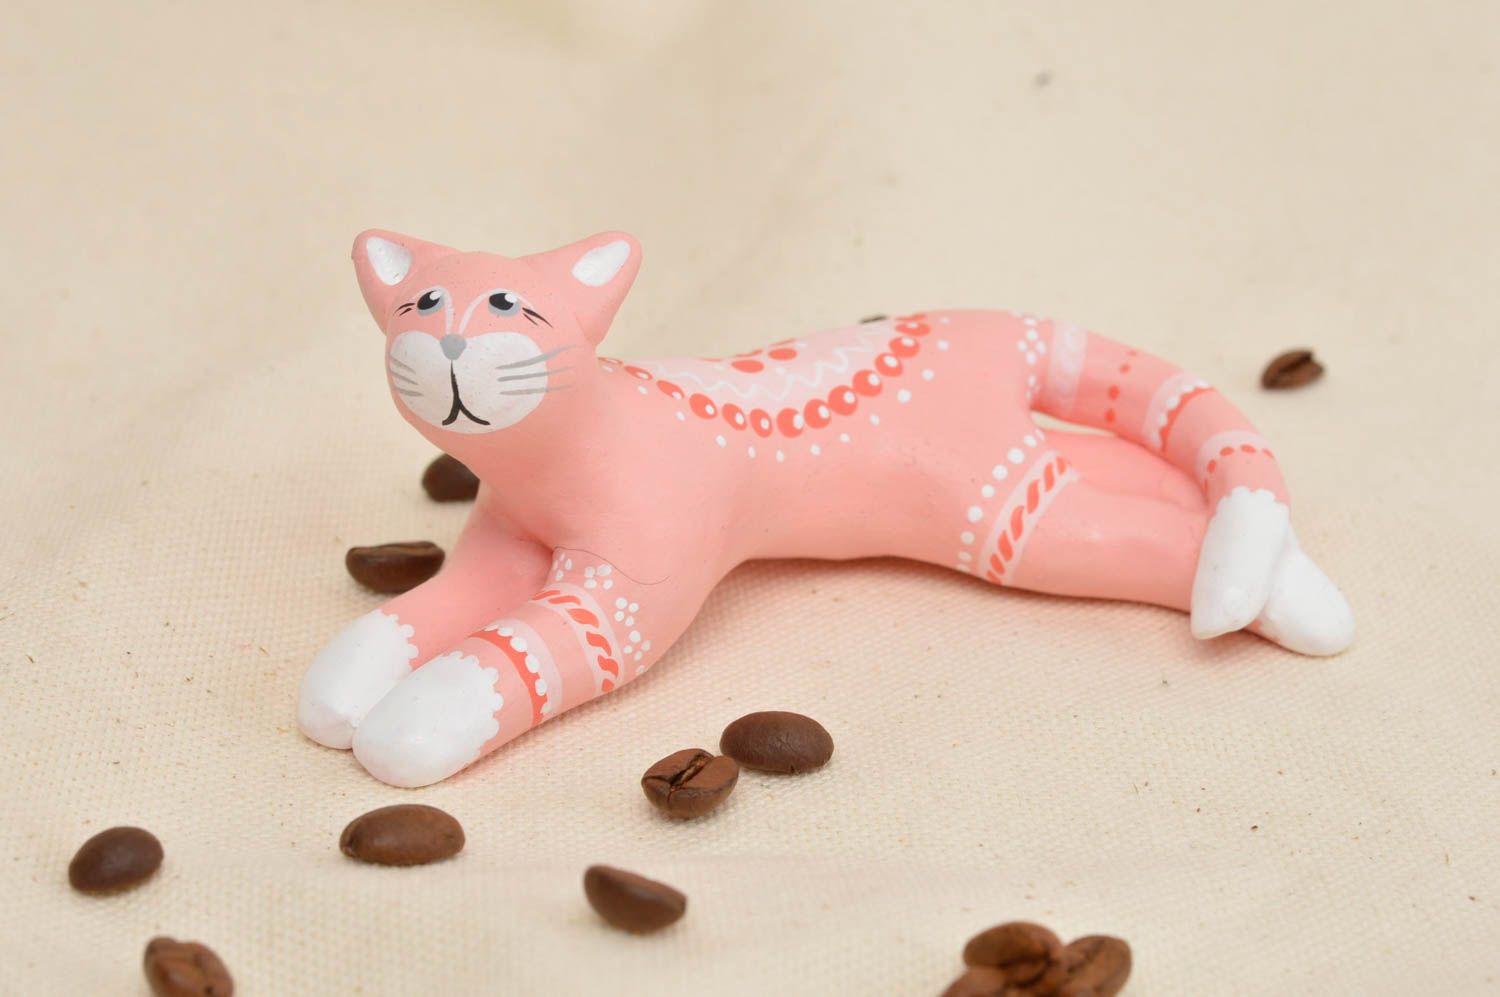 Gatto in ceramica fatto a mano figurina divertente souvenir animaletto originale foto 1